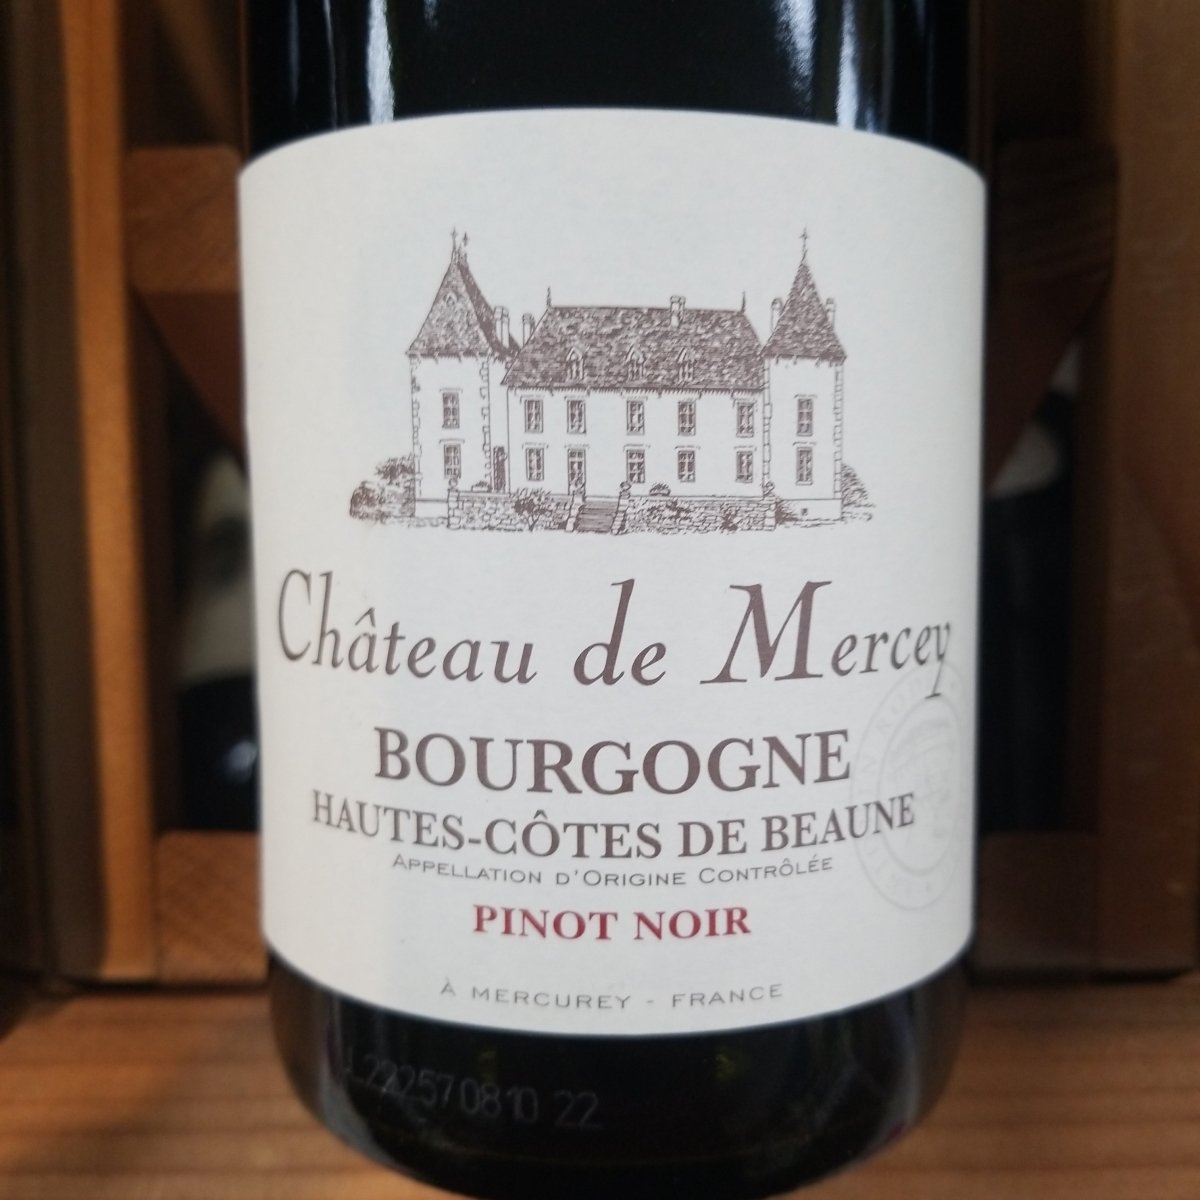 Chateau de Mercey Bourgogne Hautes Cote De Beaune 750ml - Sip & Say